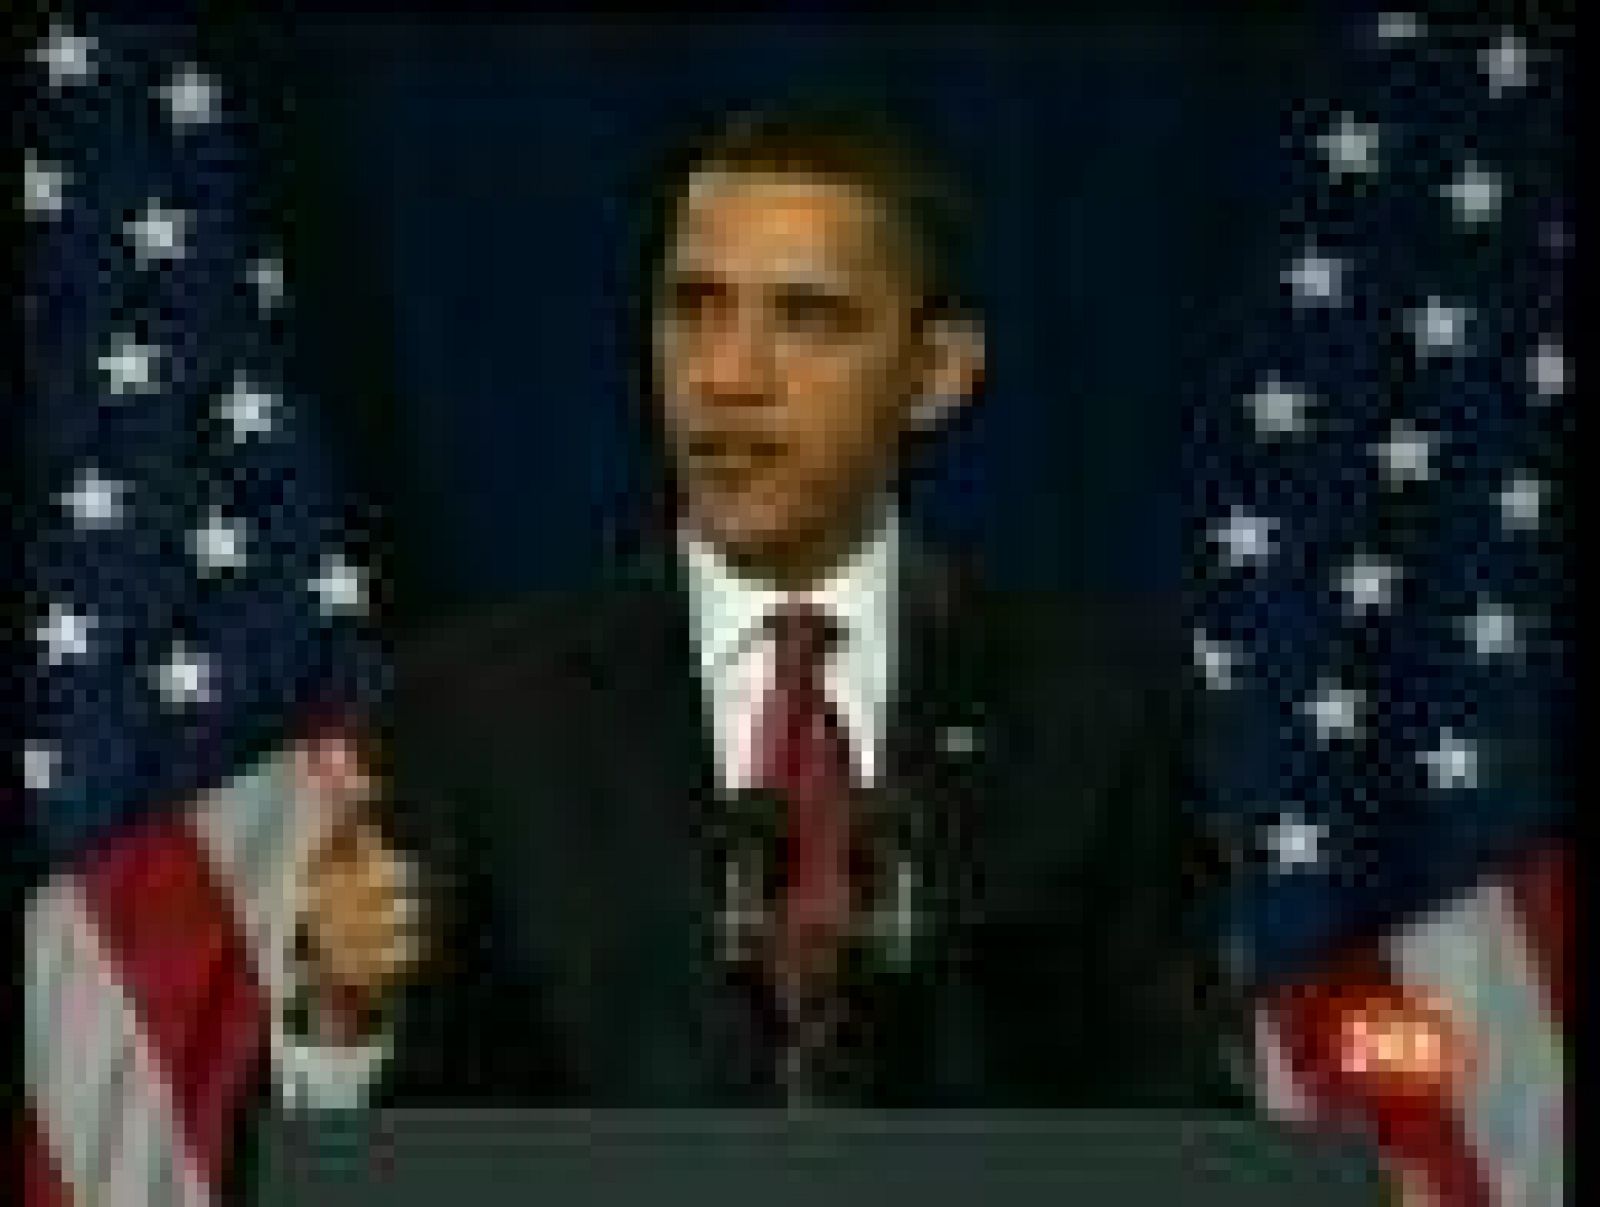 El Presidente de Estados Unidos, Barack Obama, se ha mostrado optimista respecto al alcance de las medidas económicas tomadas por su administración.